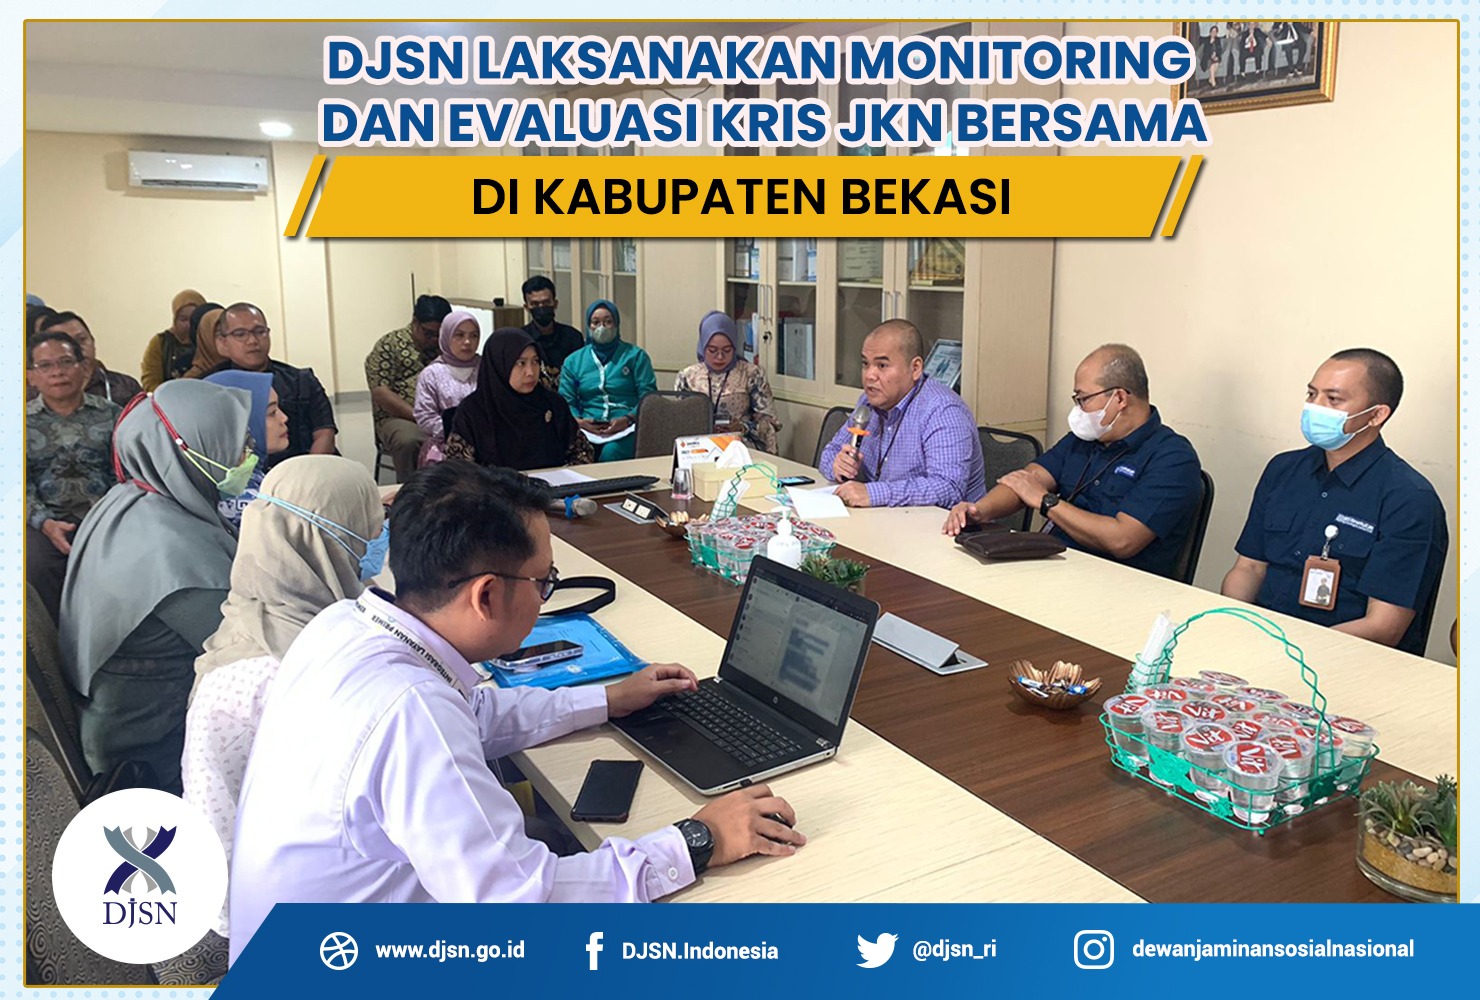 DJSN Laksanakan Monitoring dan Evaluasi KRIS JKN Bersama di Kabupaten Bekasi